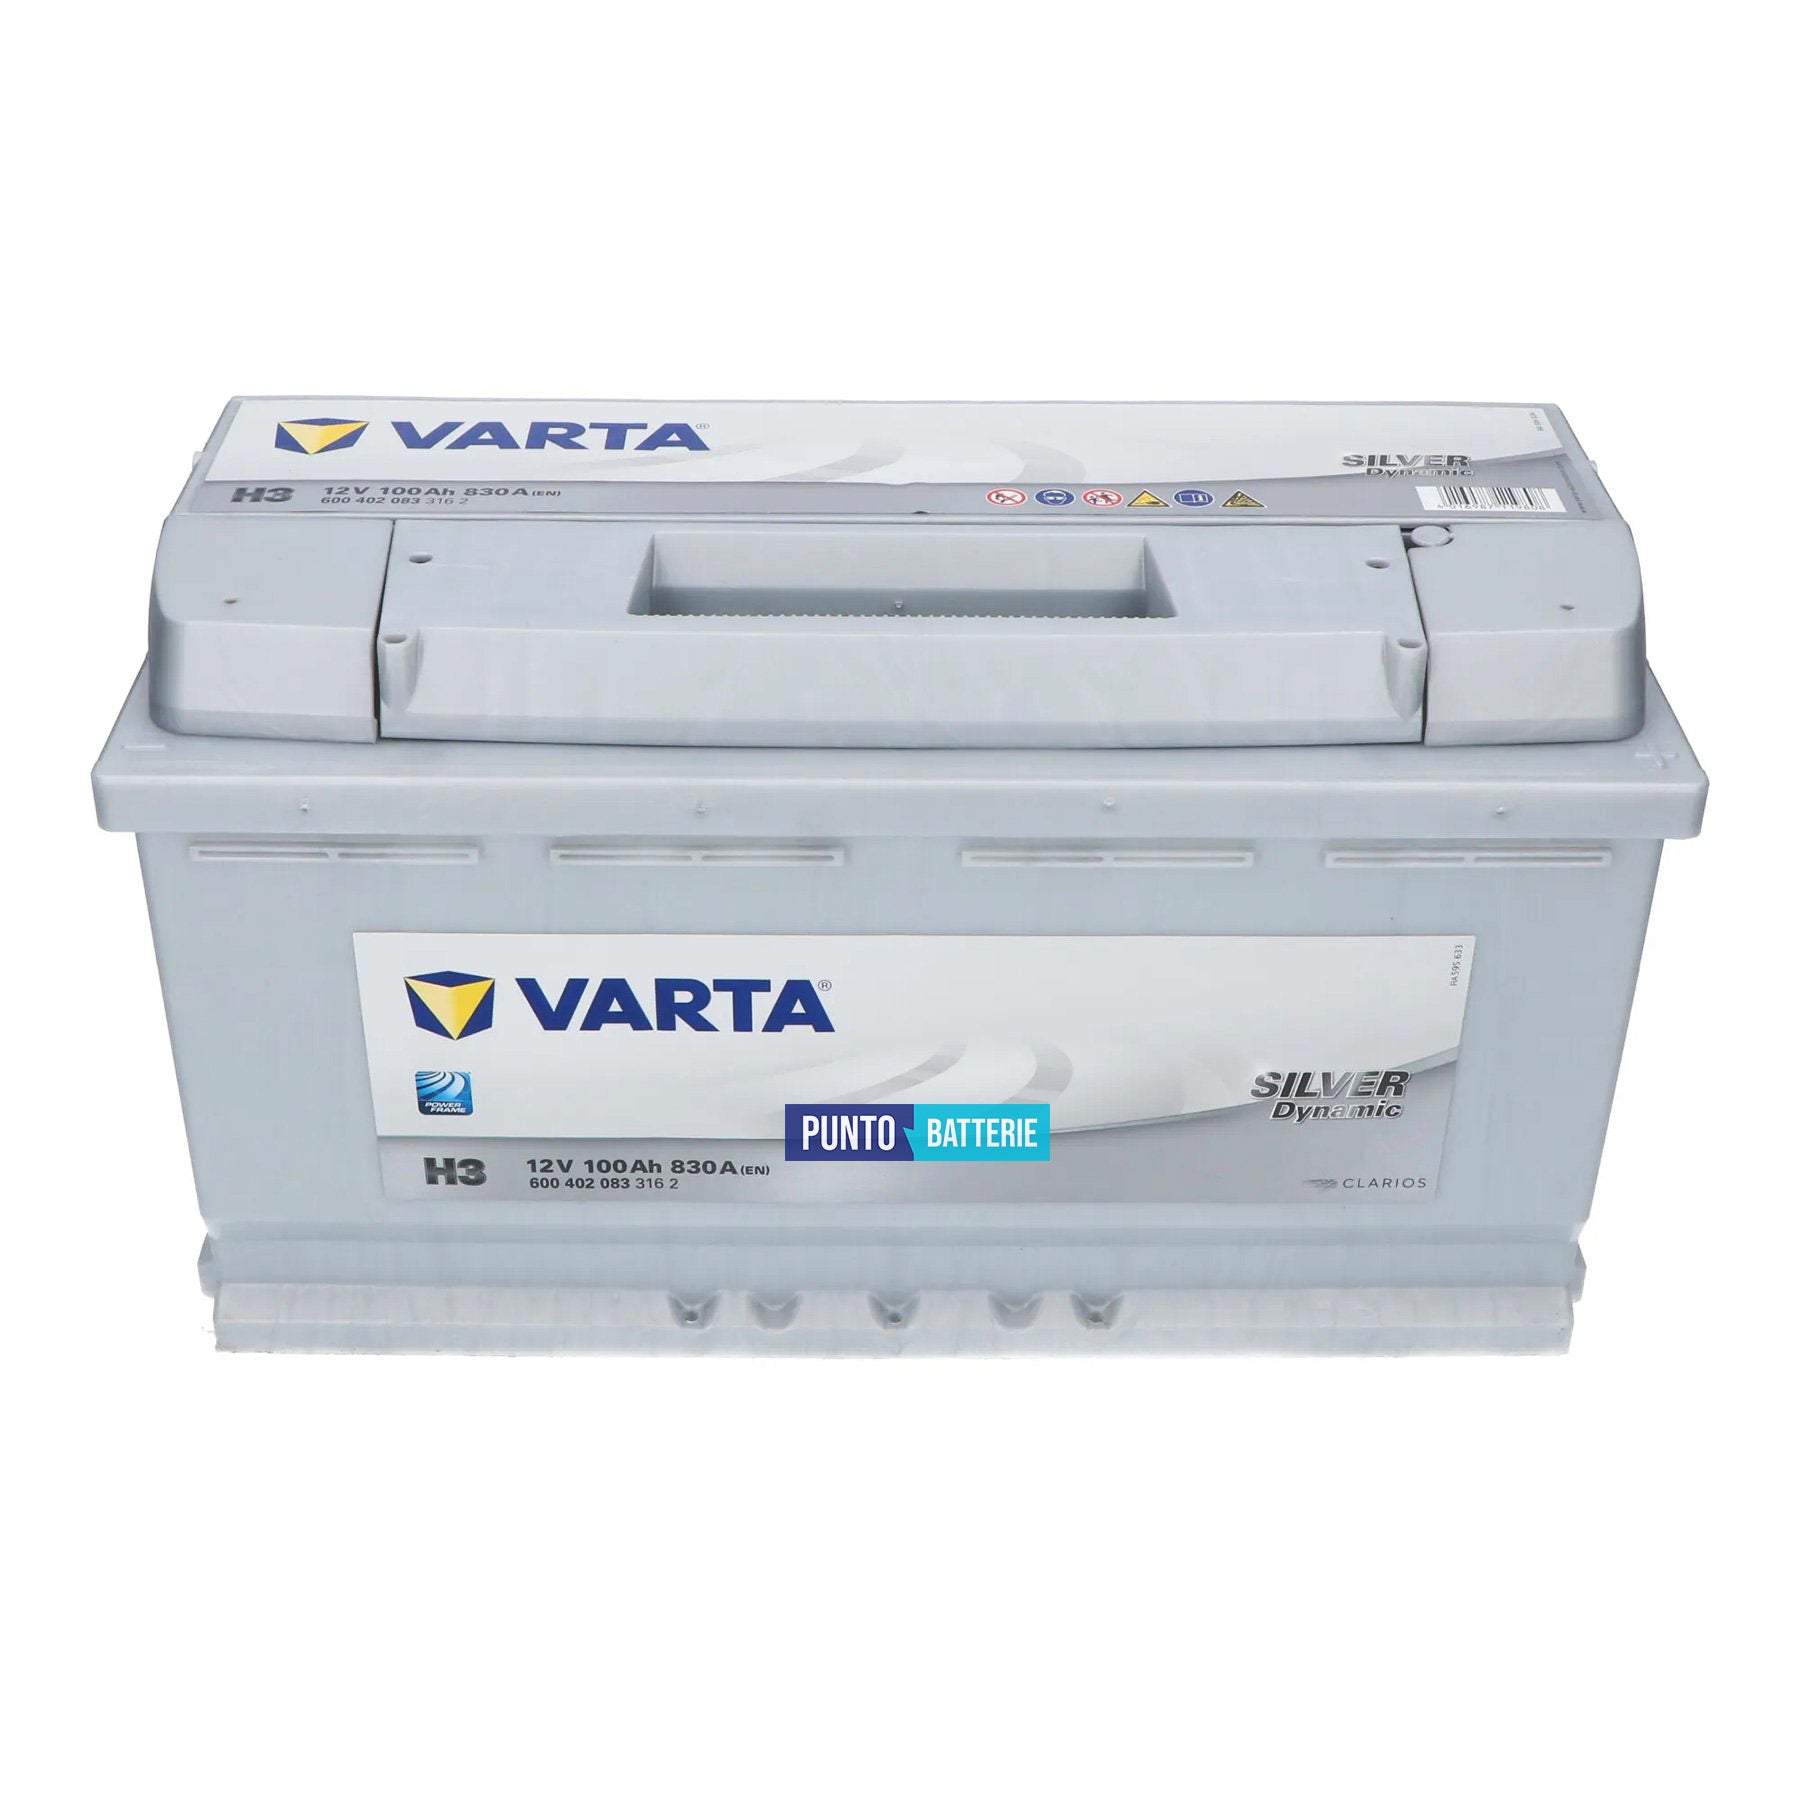 Batteria Varta 100Ah, 12V, 830A, 353x175x190mm